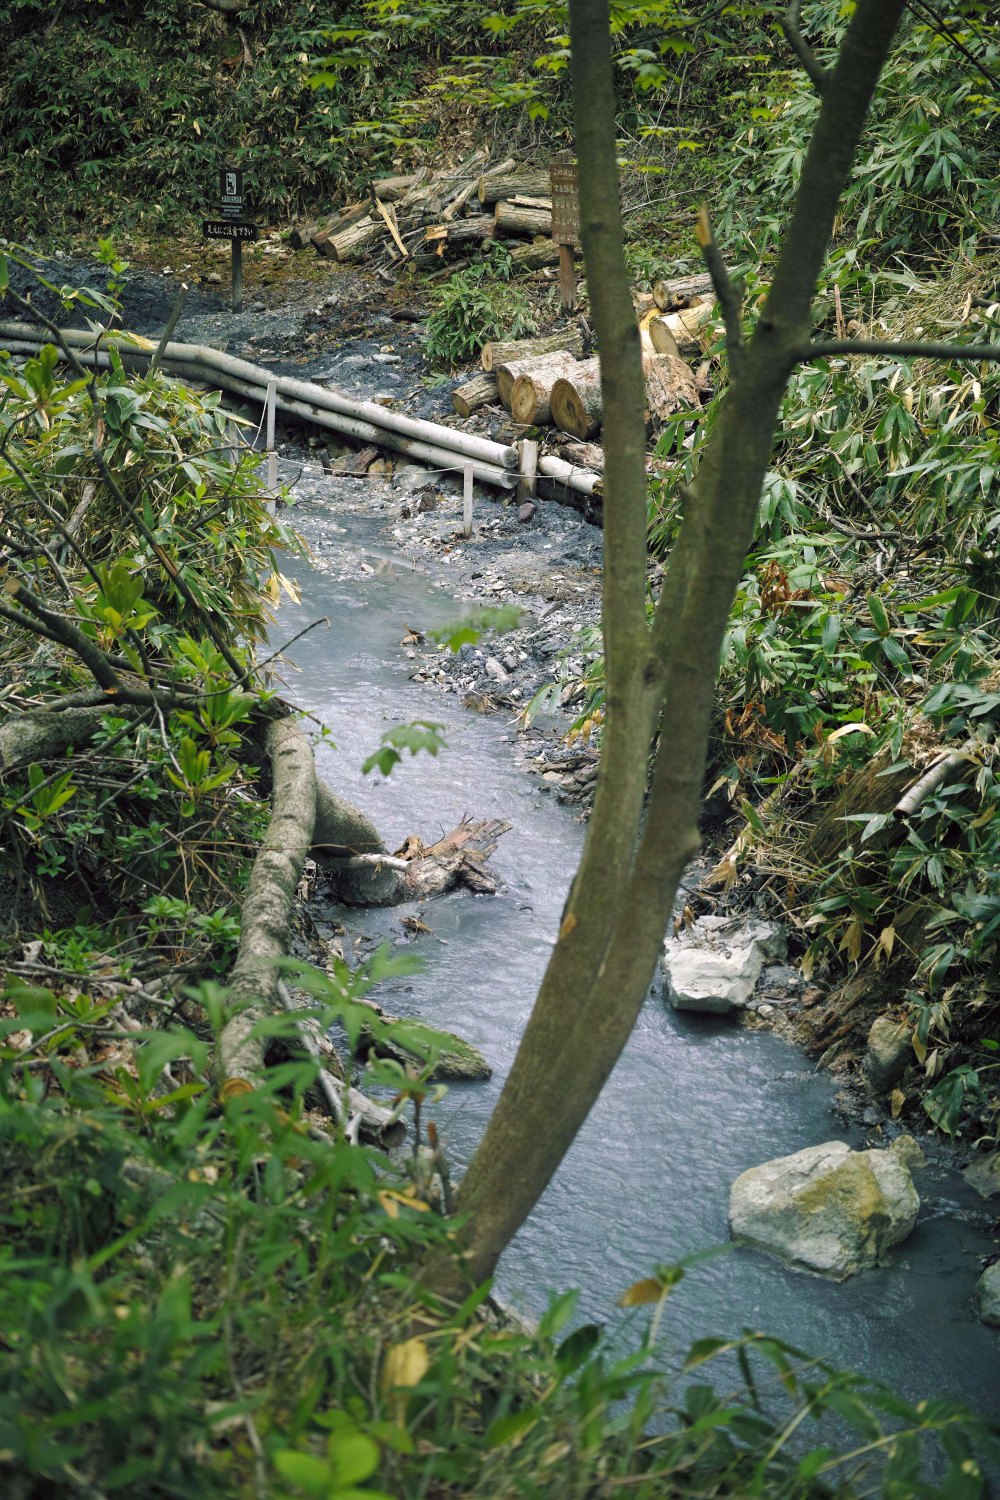 Bain de pied dans la rivière chaude du parc de Noboribetsu, au sud de l'île d'Hokkaido, Japon.